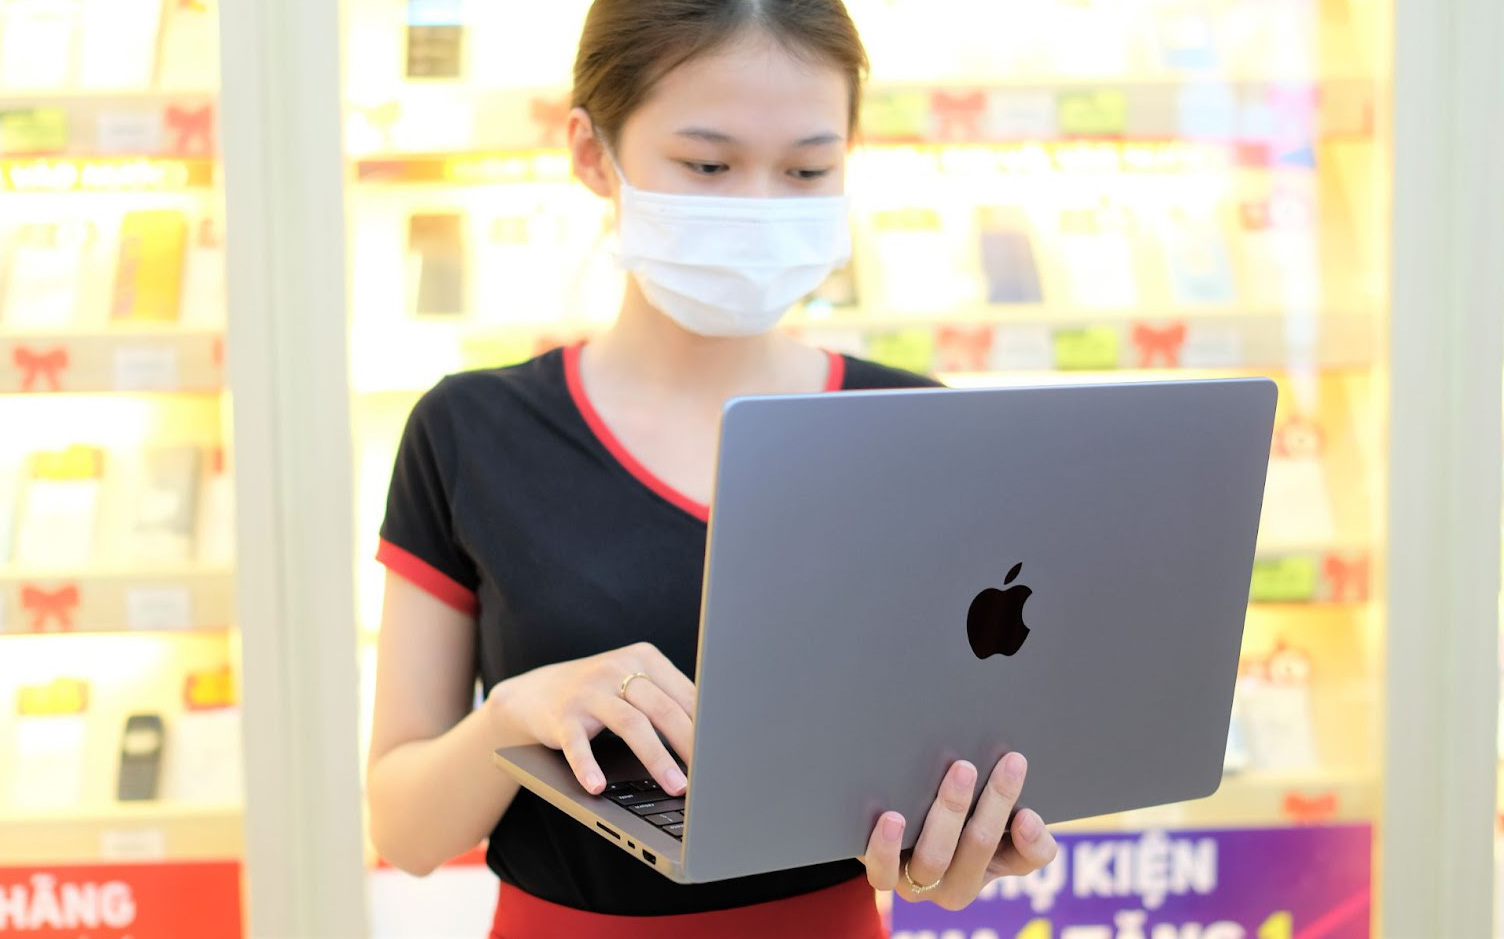 MacBook Pro 2021 chính hãng lên kệ tại Việt Nam, bản cao nhất giá hơn 90 triệu đồng nhưng không có hàng để bán